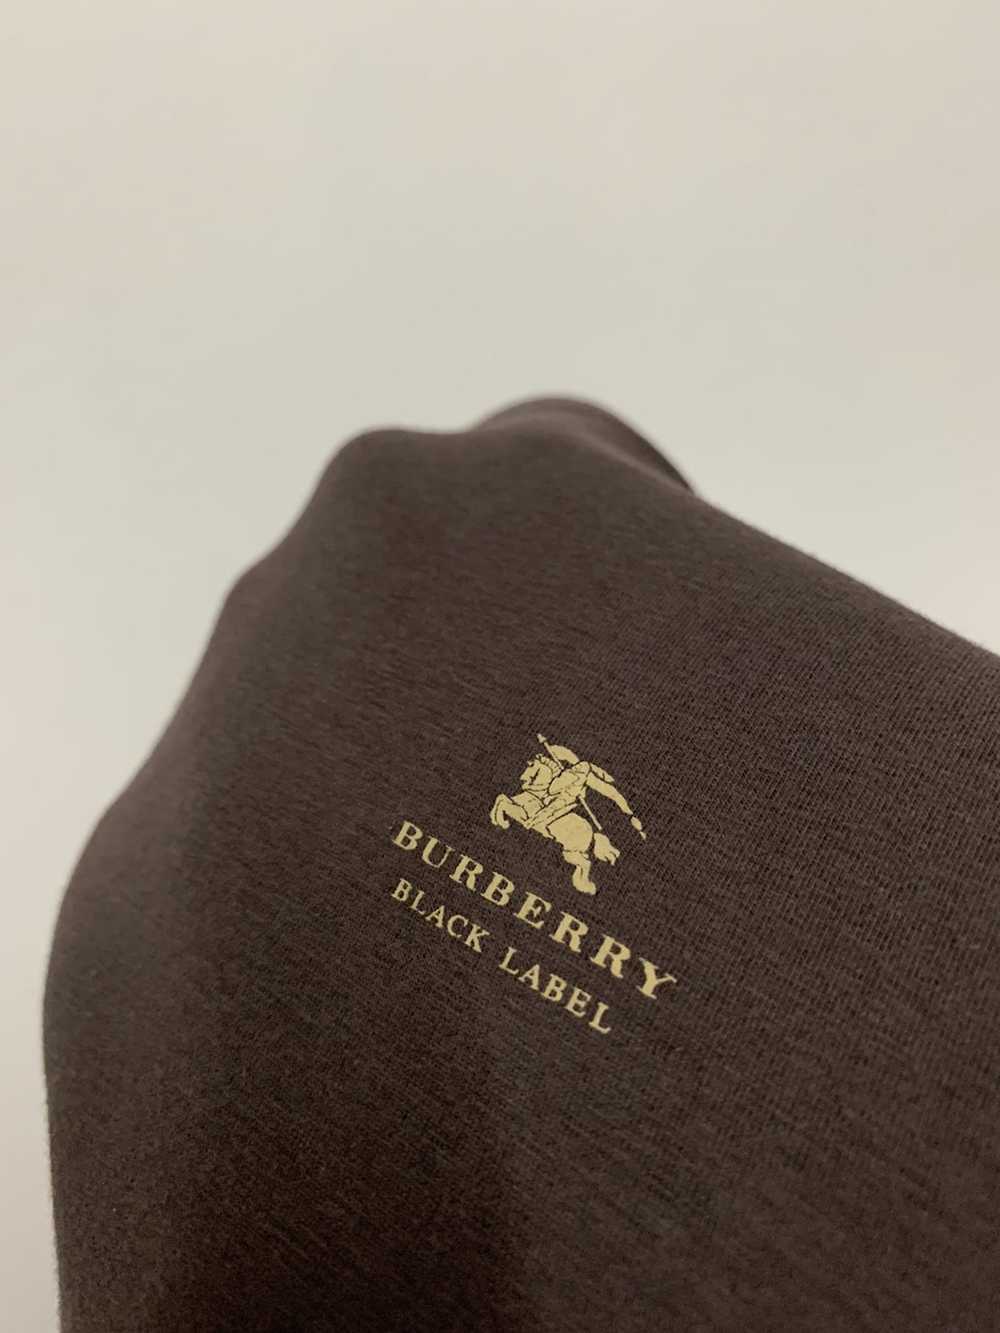 Burberry Burberry Black Label V-neck Shirt Chocol… - image 7